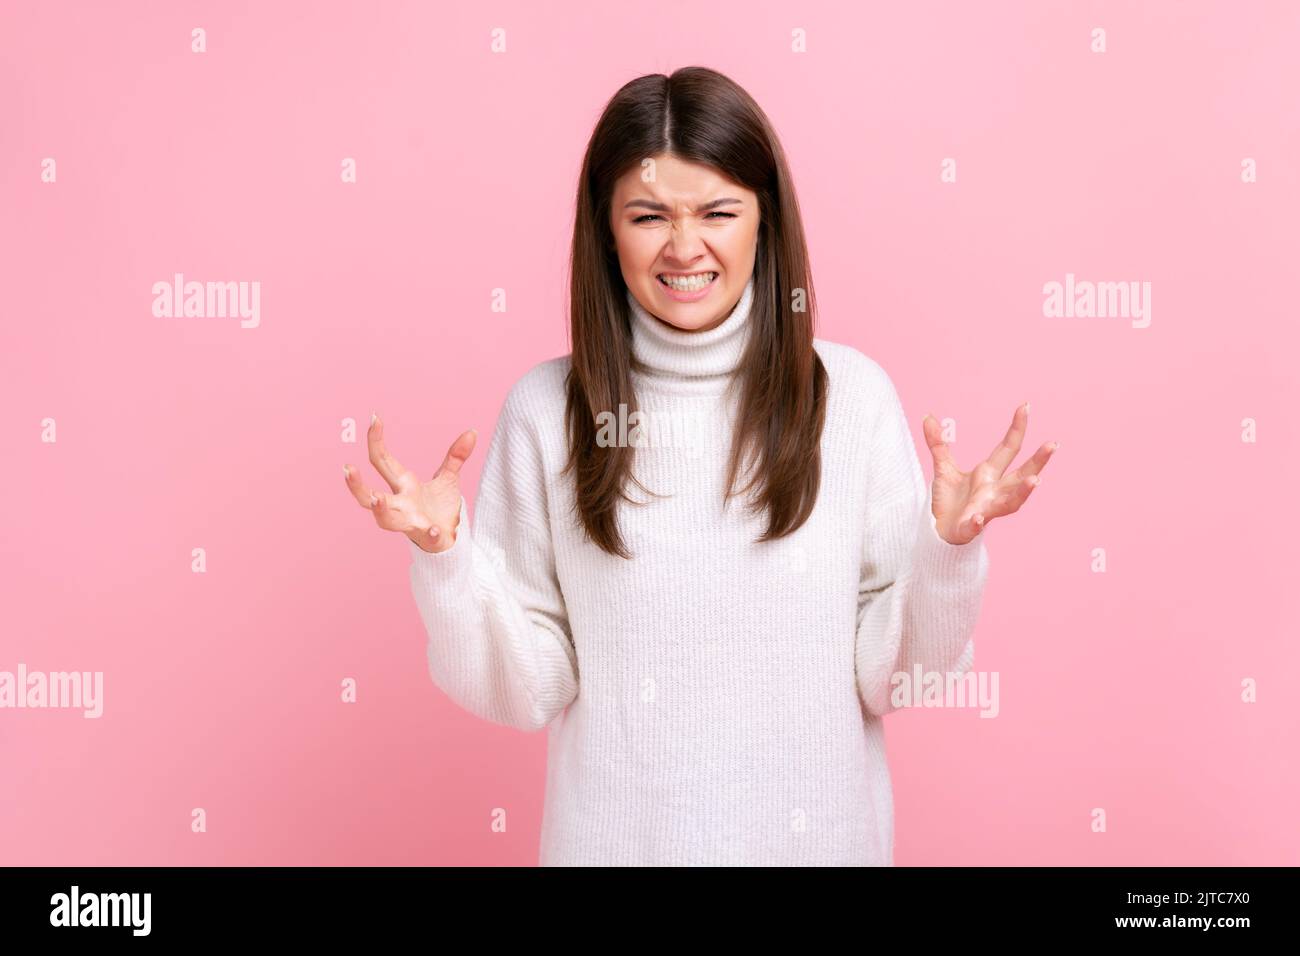 Porträt einer wütenden Frau, die mit erhobenen Armen steht und Aggression, Schreien, Stirnrunzeln ausdrückt und einen weißen Pullover im lässigen Stil trägt. Innenaufnahme des Studios isoliert auf rosa Hintergrund. Stockfoto